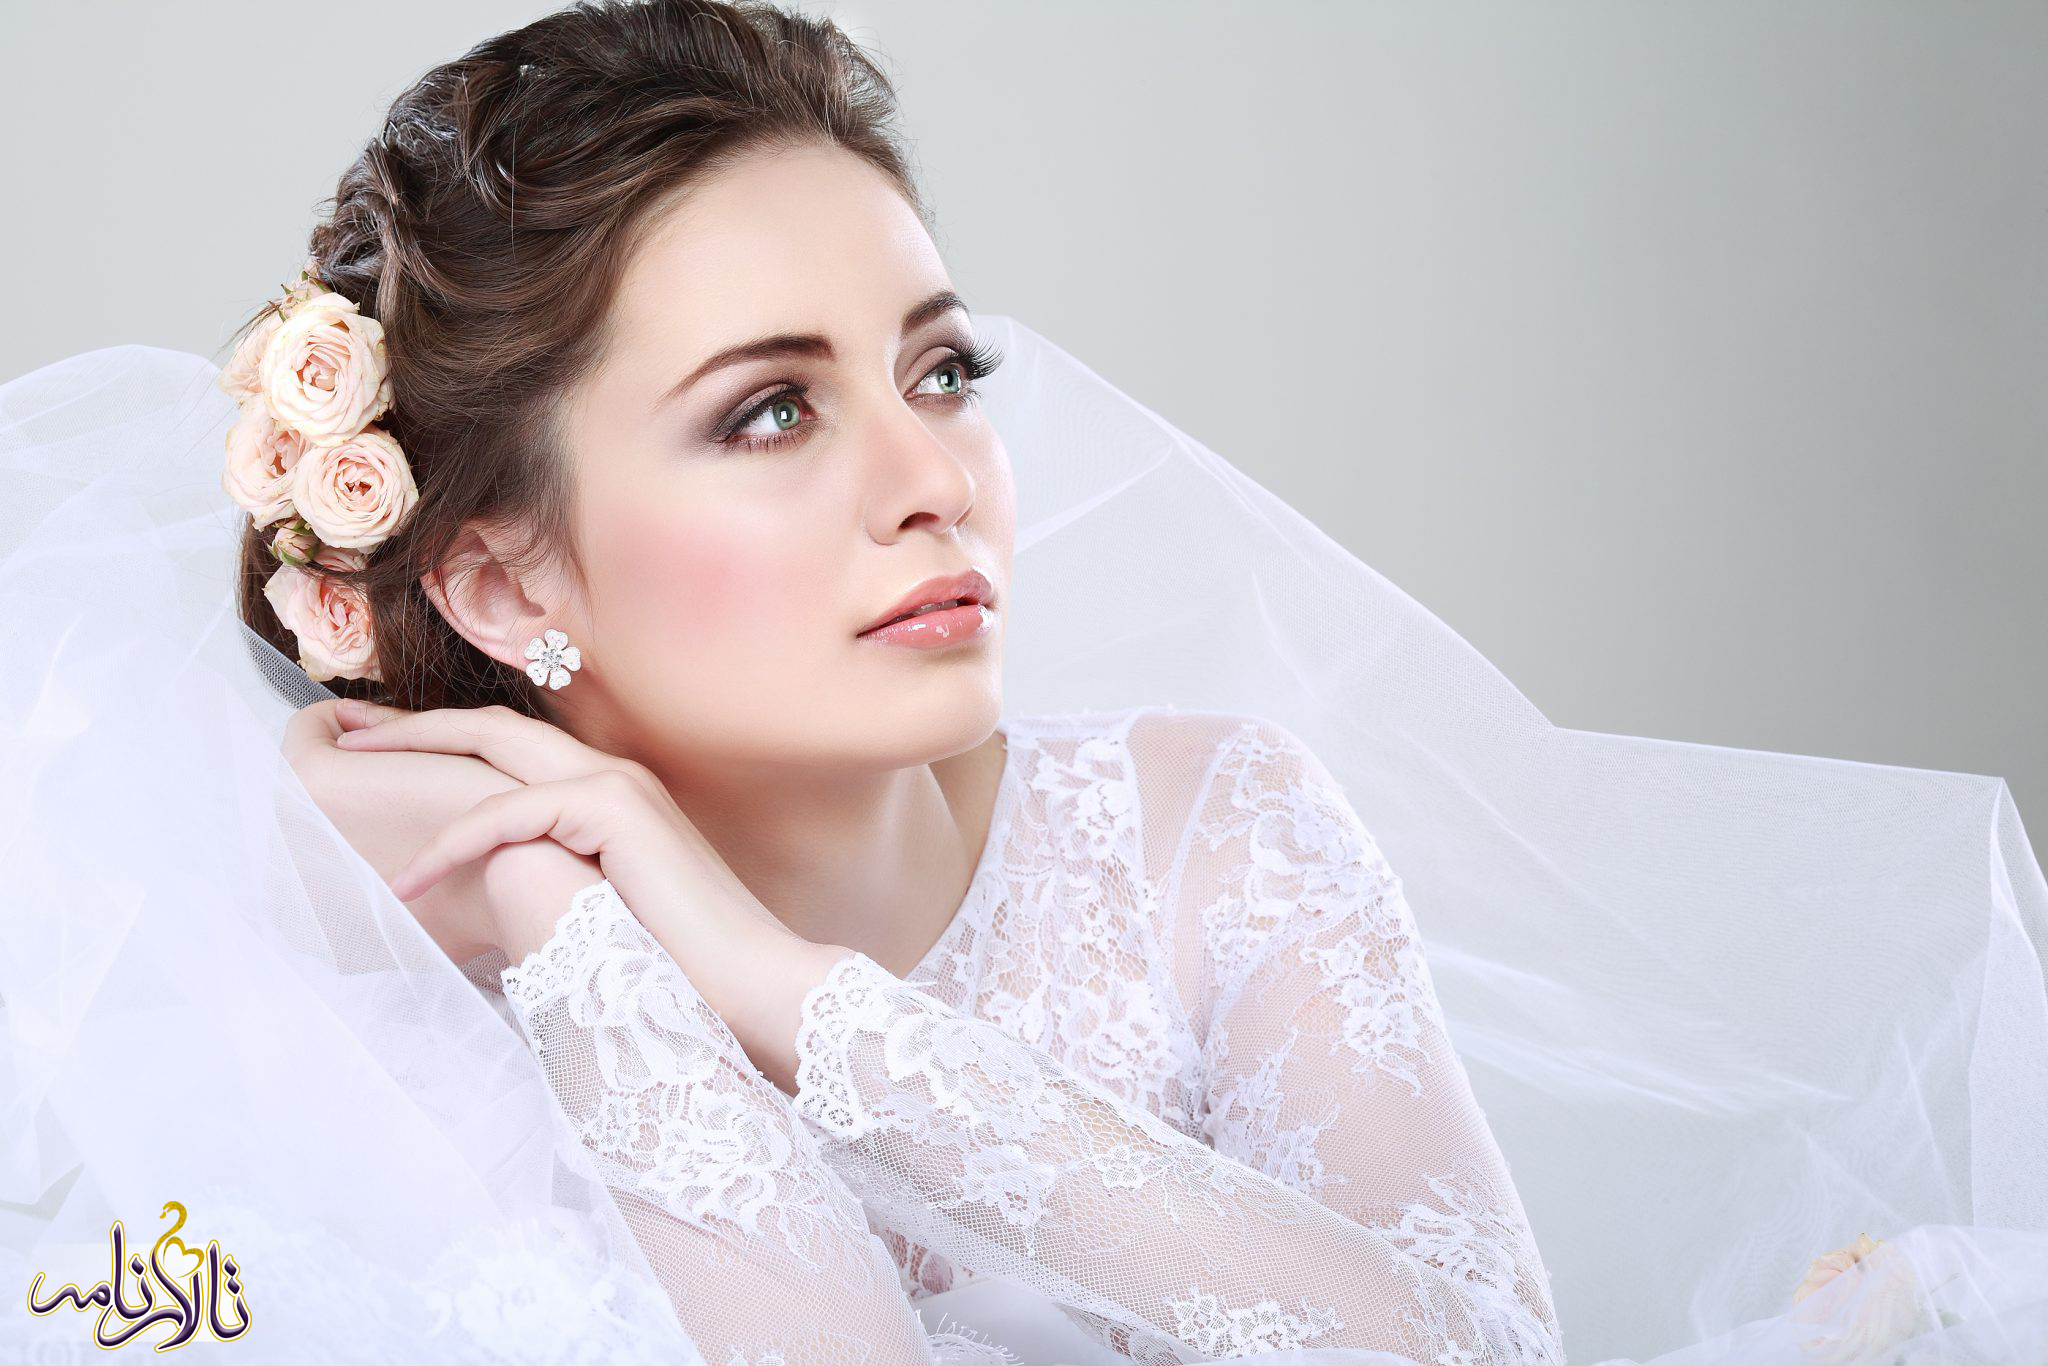 9 سوالی که ذهن هر تازه عروسی را به خود مشغول خواهد کرد